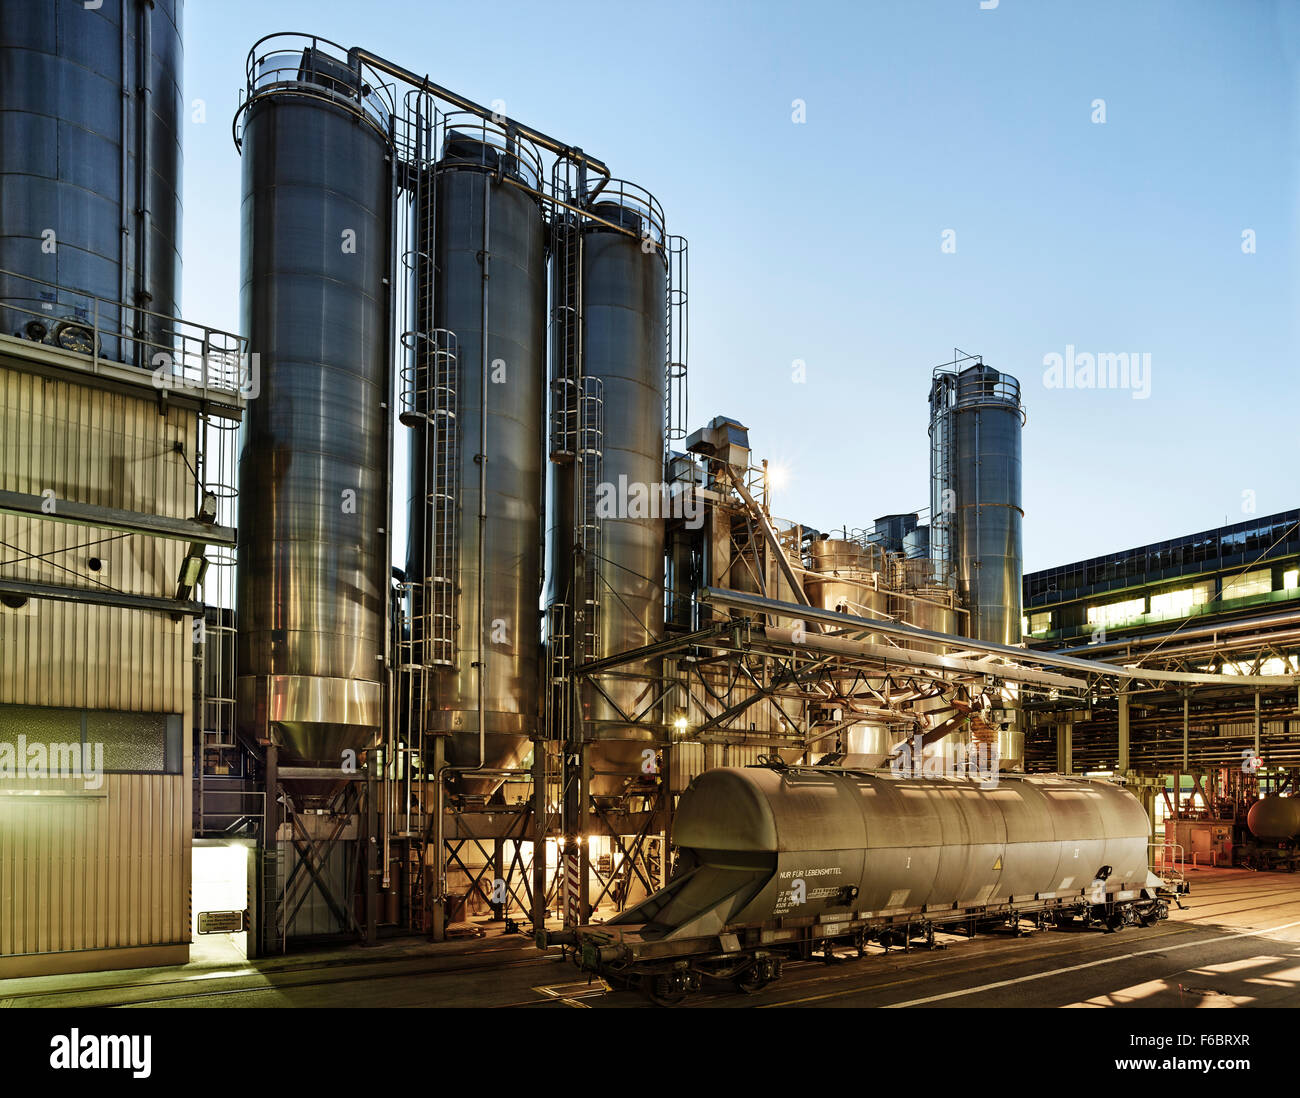 Impianto industriale, stabilimento di produzione, l'industria farmaceutica, Kundl, Tirolo, Austria Foto Stock